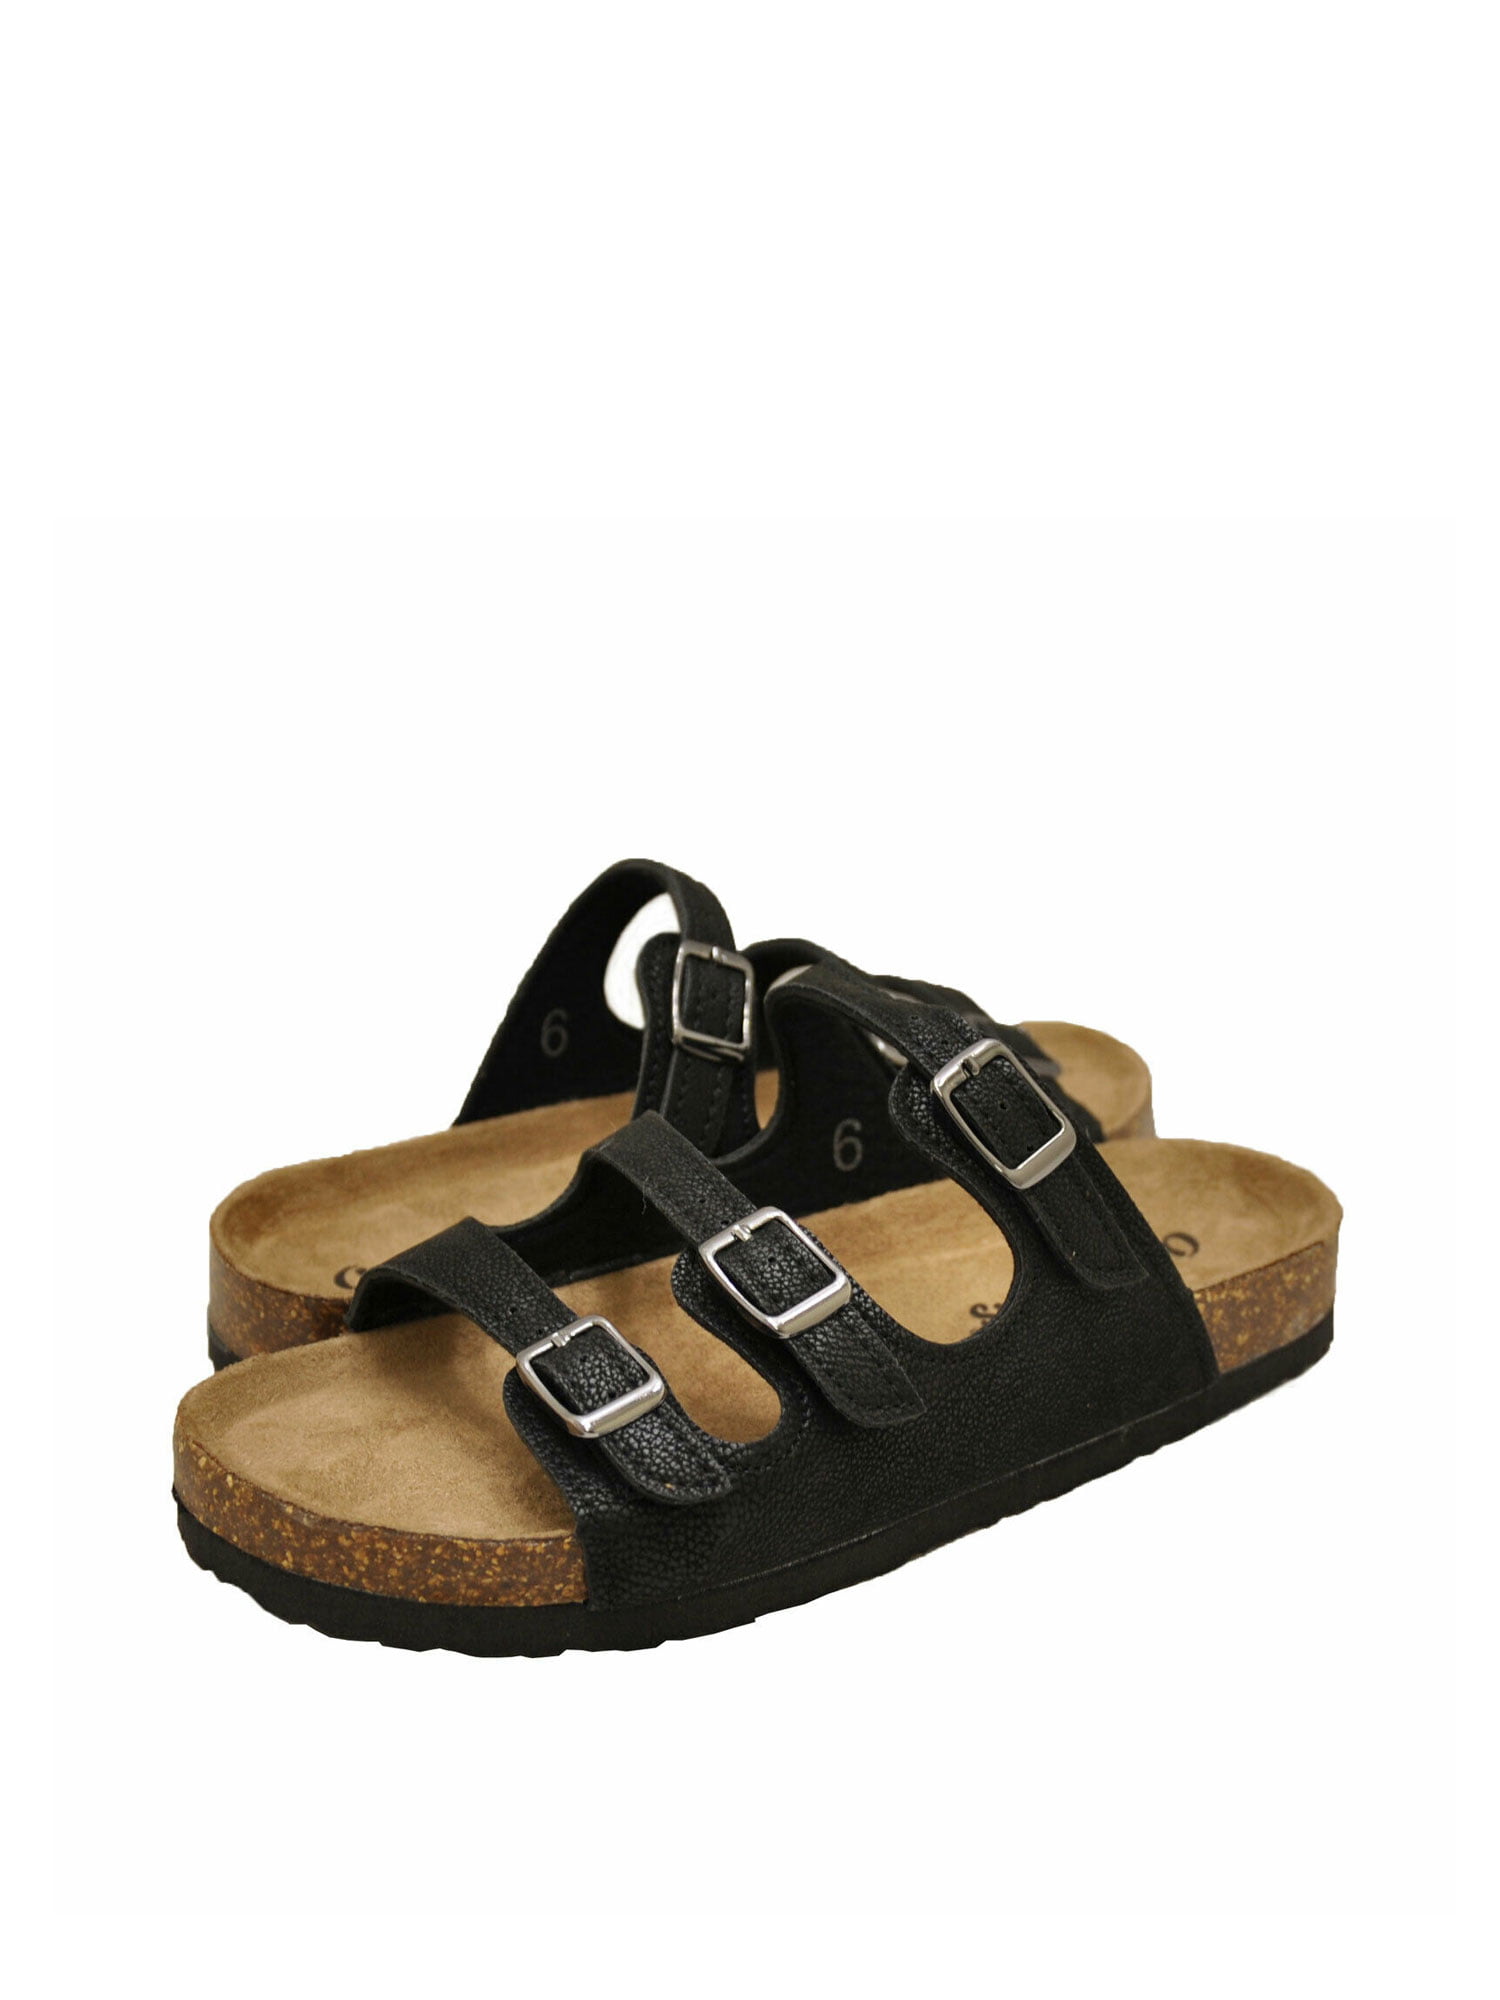 walmart buckle sandals